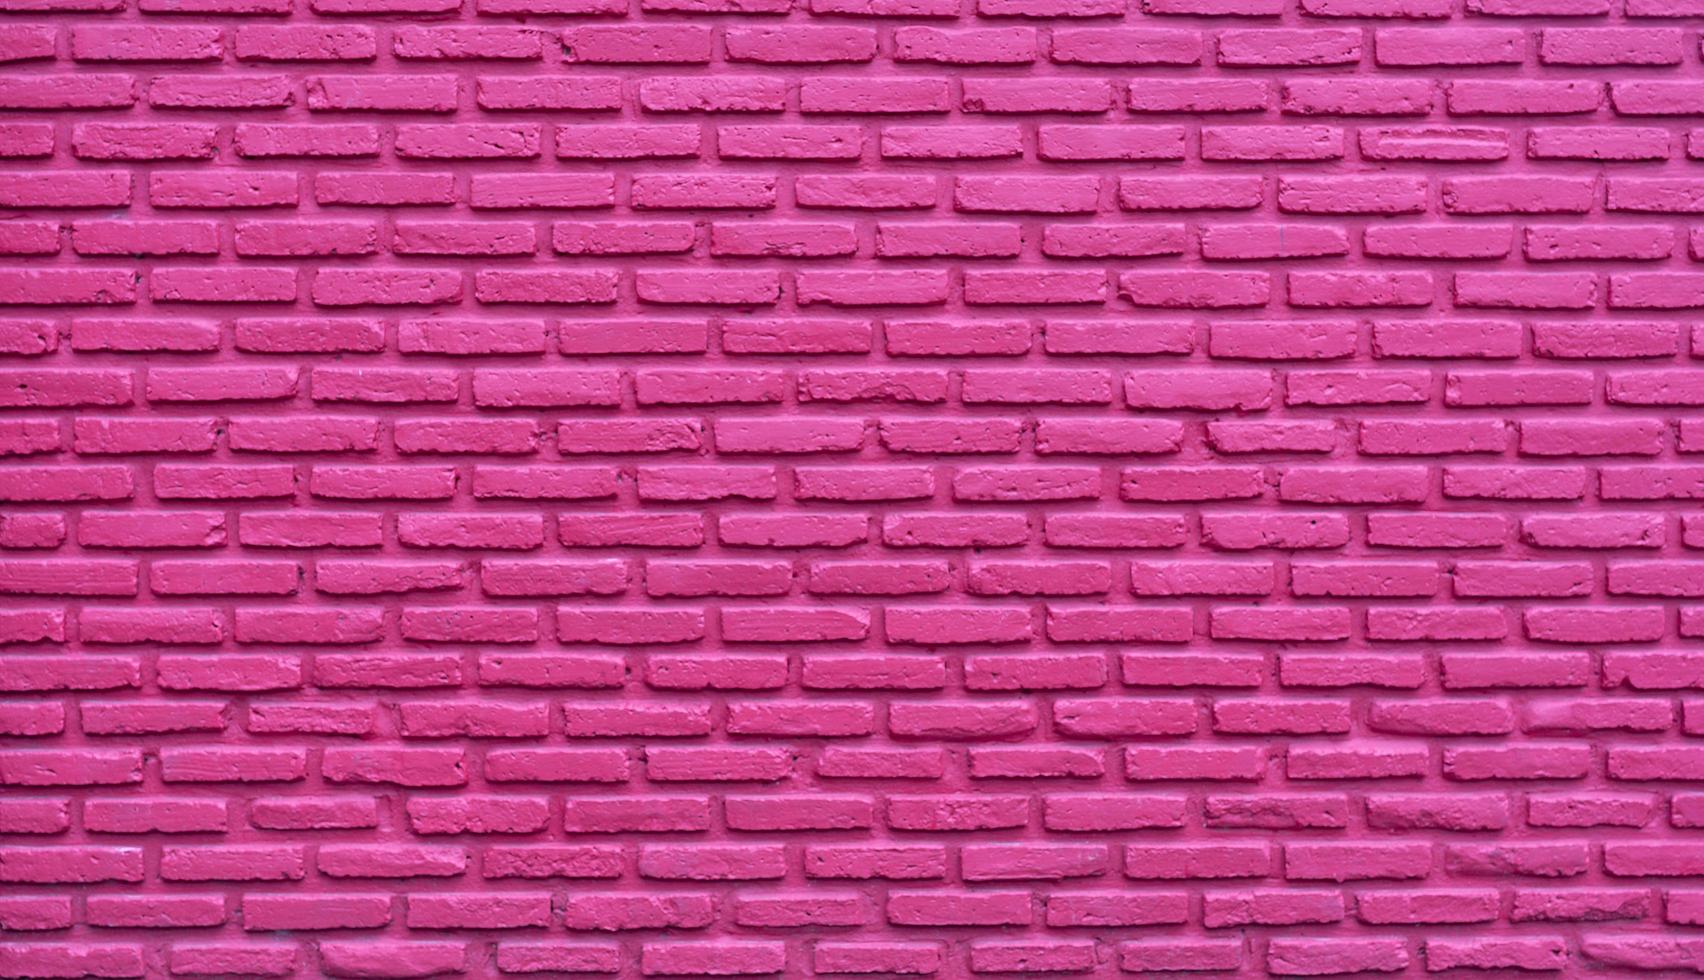 roze bakstenen muur abstracte achtergrond. roze ruwe bakstenen muur textuur. achtergrond voor liefde en Valentijnsdag. bakstenen muur behang met kopie ruimte. interieur of exterieur architectuurontwerp voor dame. foto